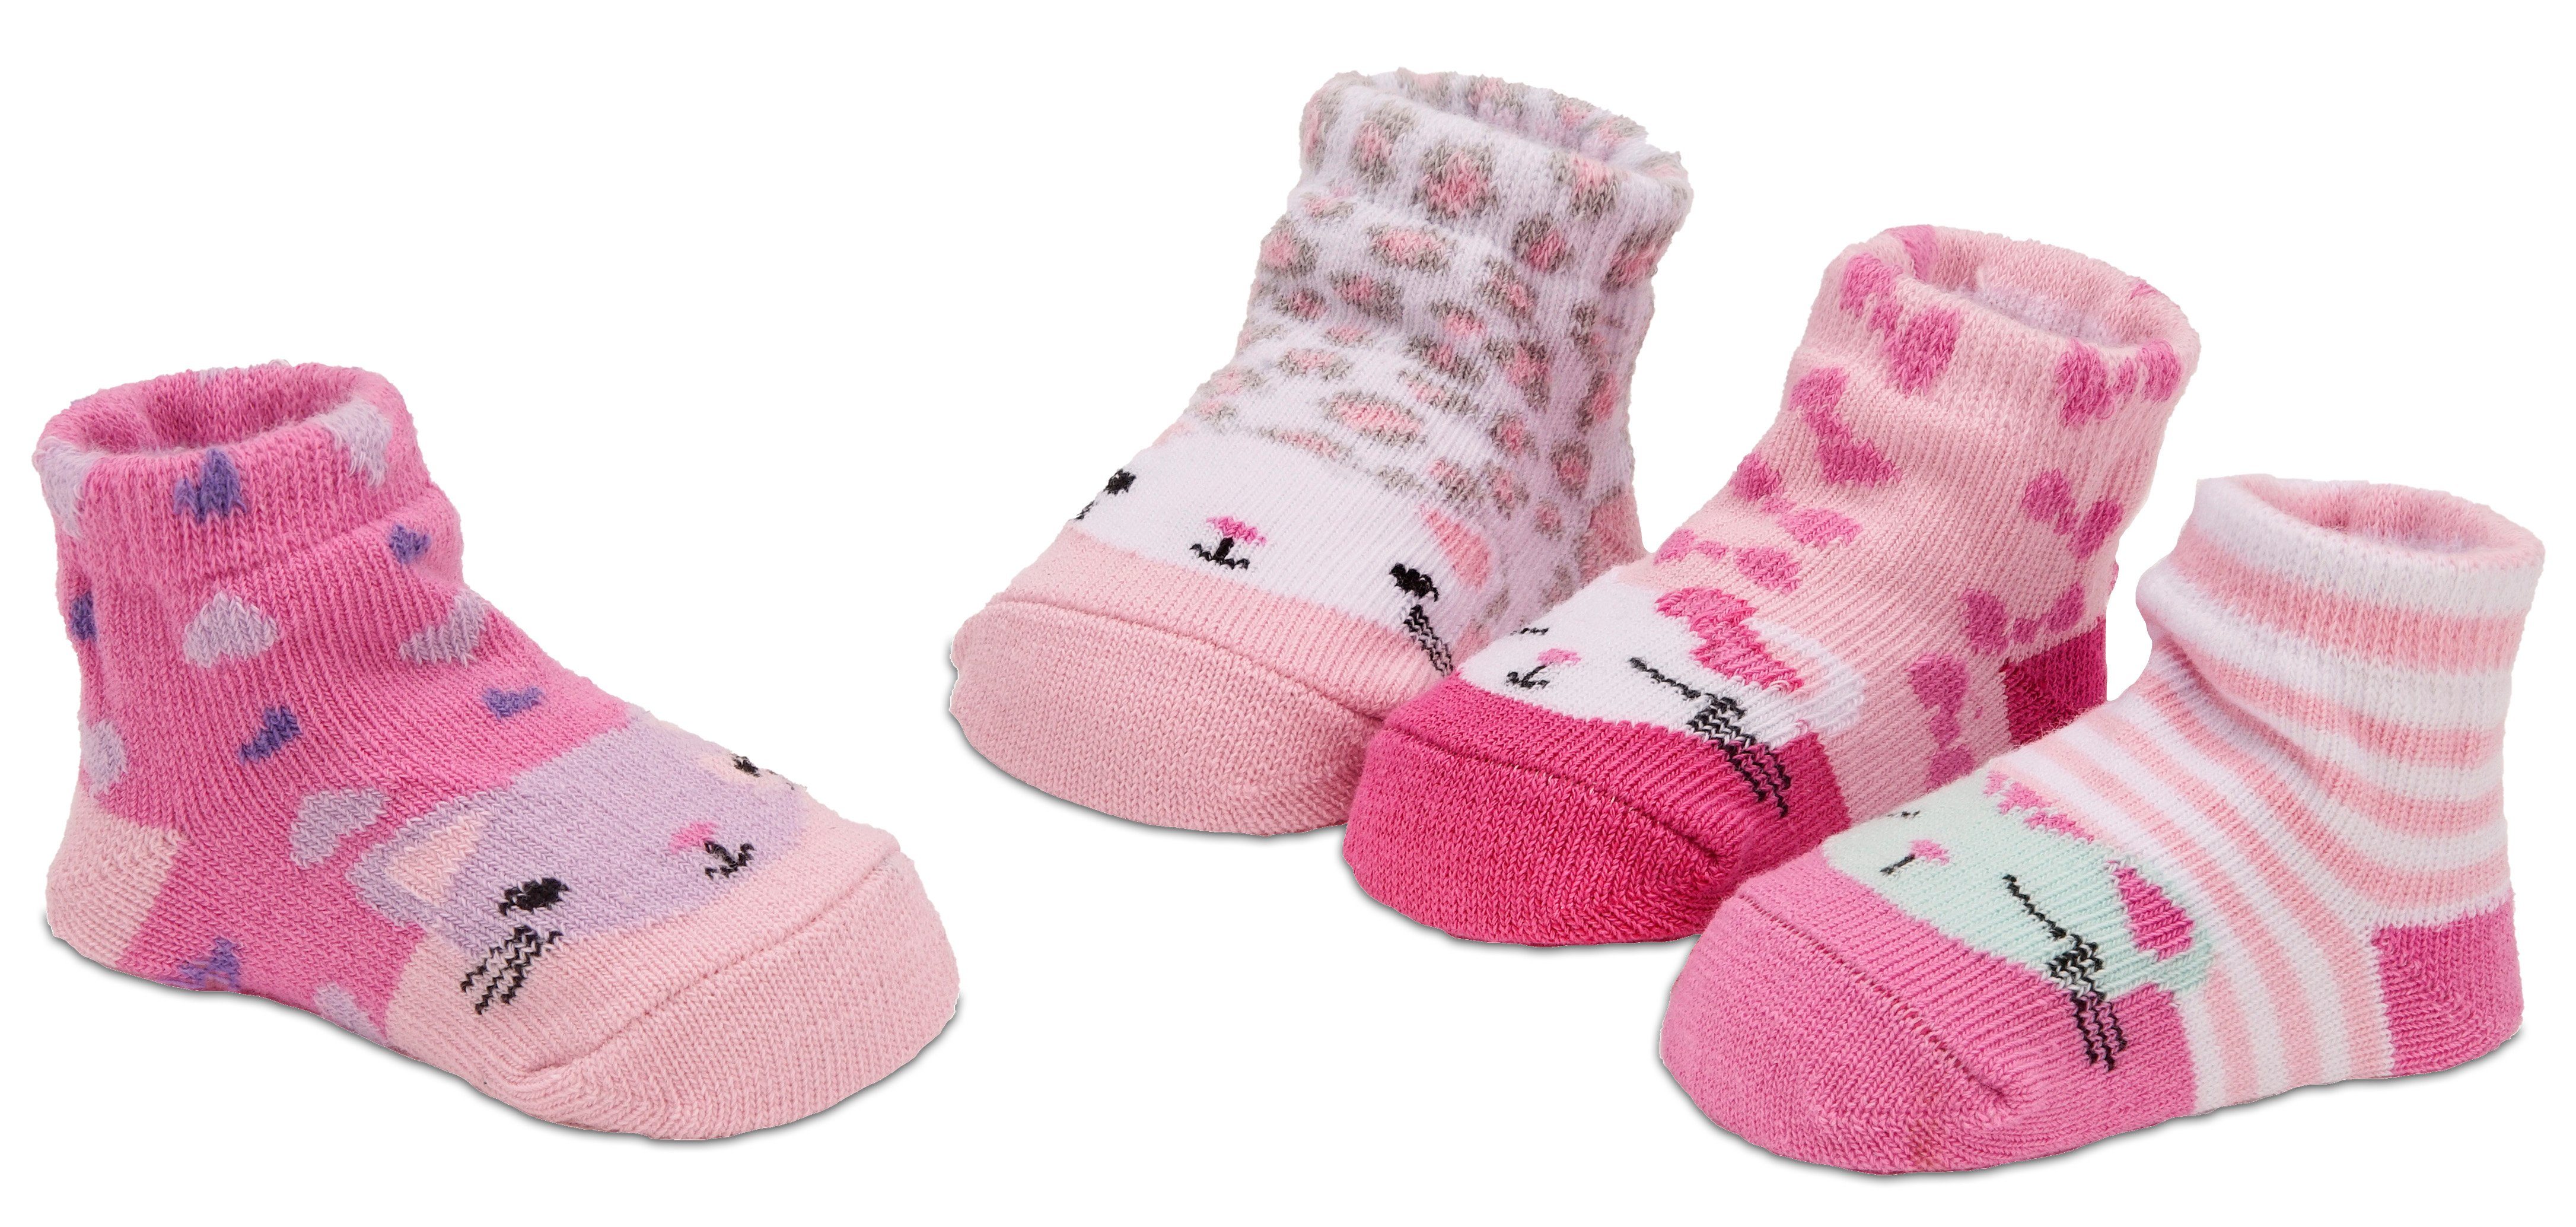 Rosa 0-6 Monate BLEIBE OBEN Baby Socken 3 Paar mit Aufenthalt auf Technologie 